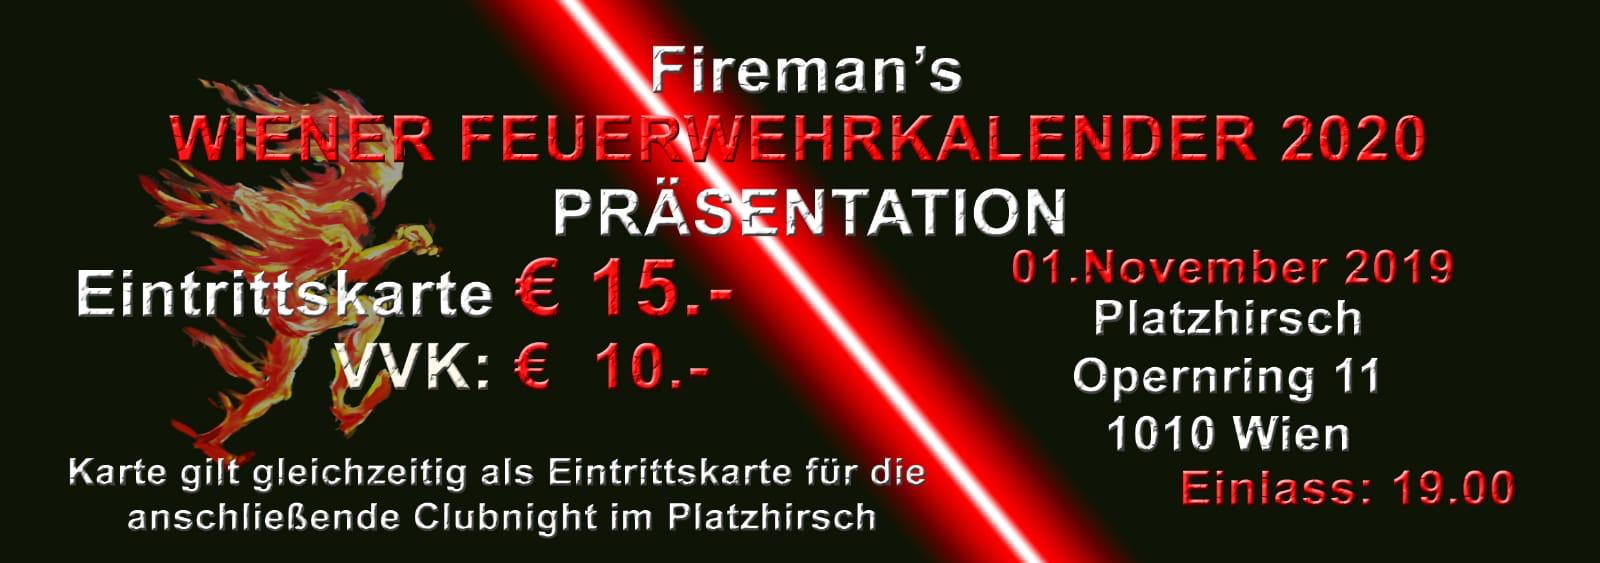 Ticketverkauf Feuerwehr-Kalender Wien 2020 Präsentationsshow